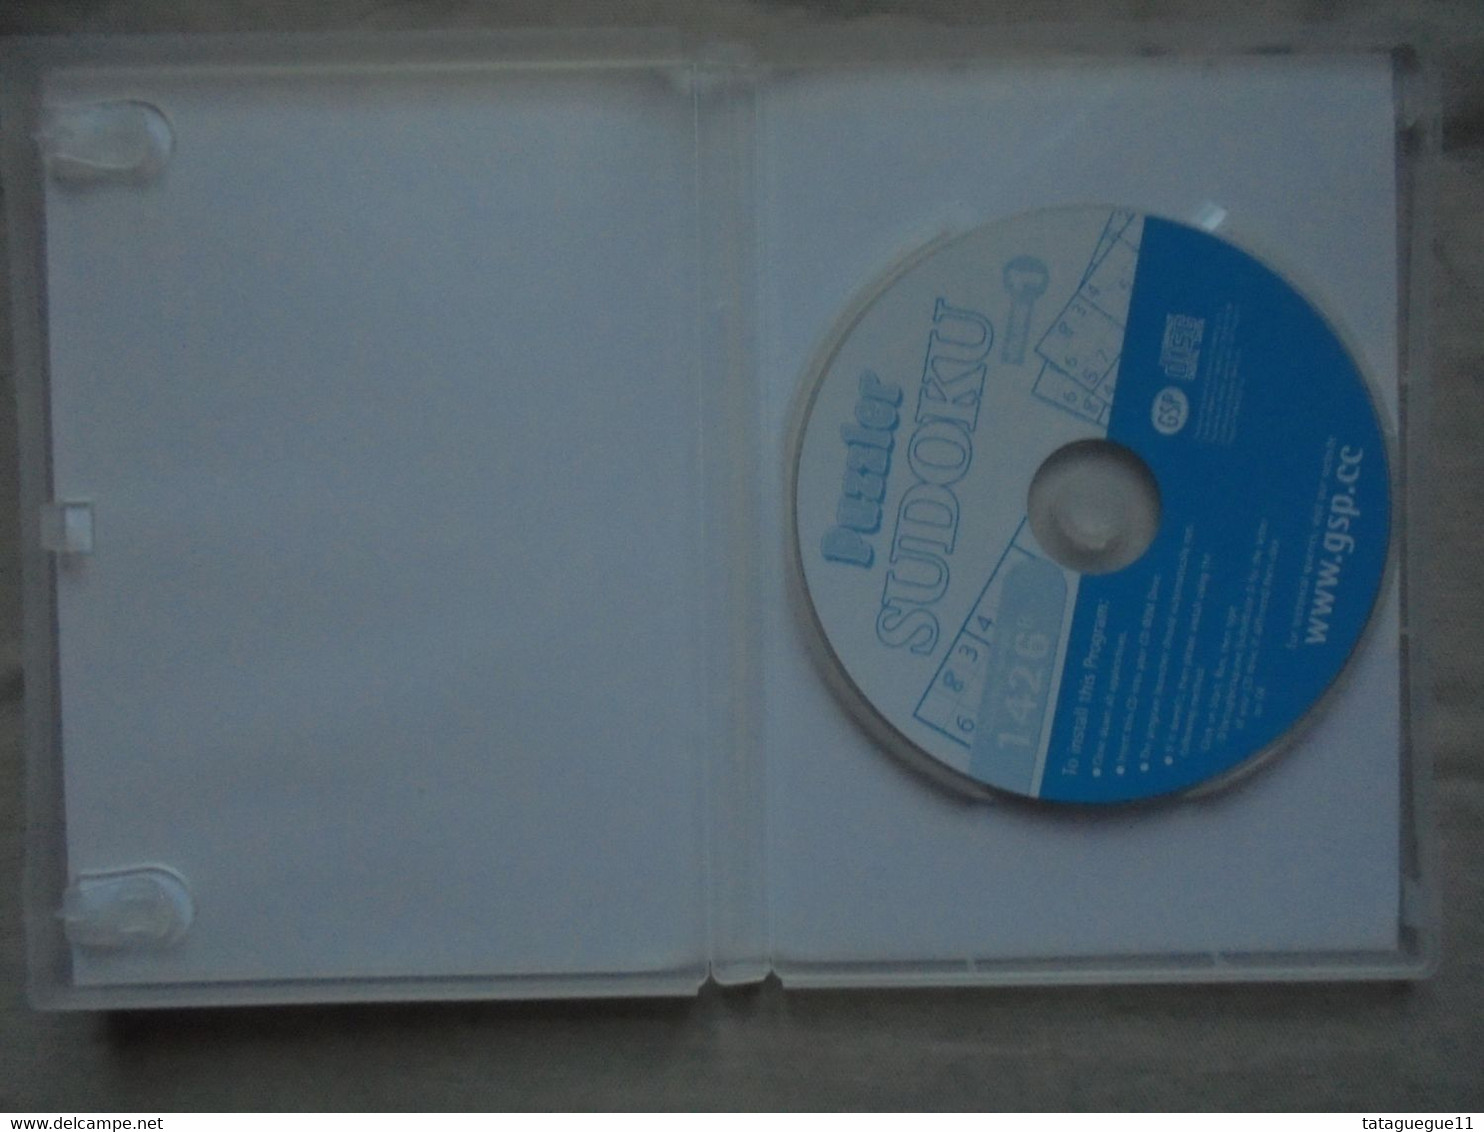 Vintage - Jeu PC CD - Puzzler Sudoku Voume 1 - 2005 - PC-games